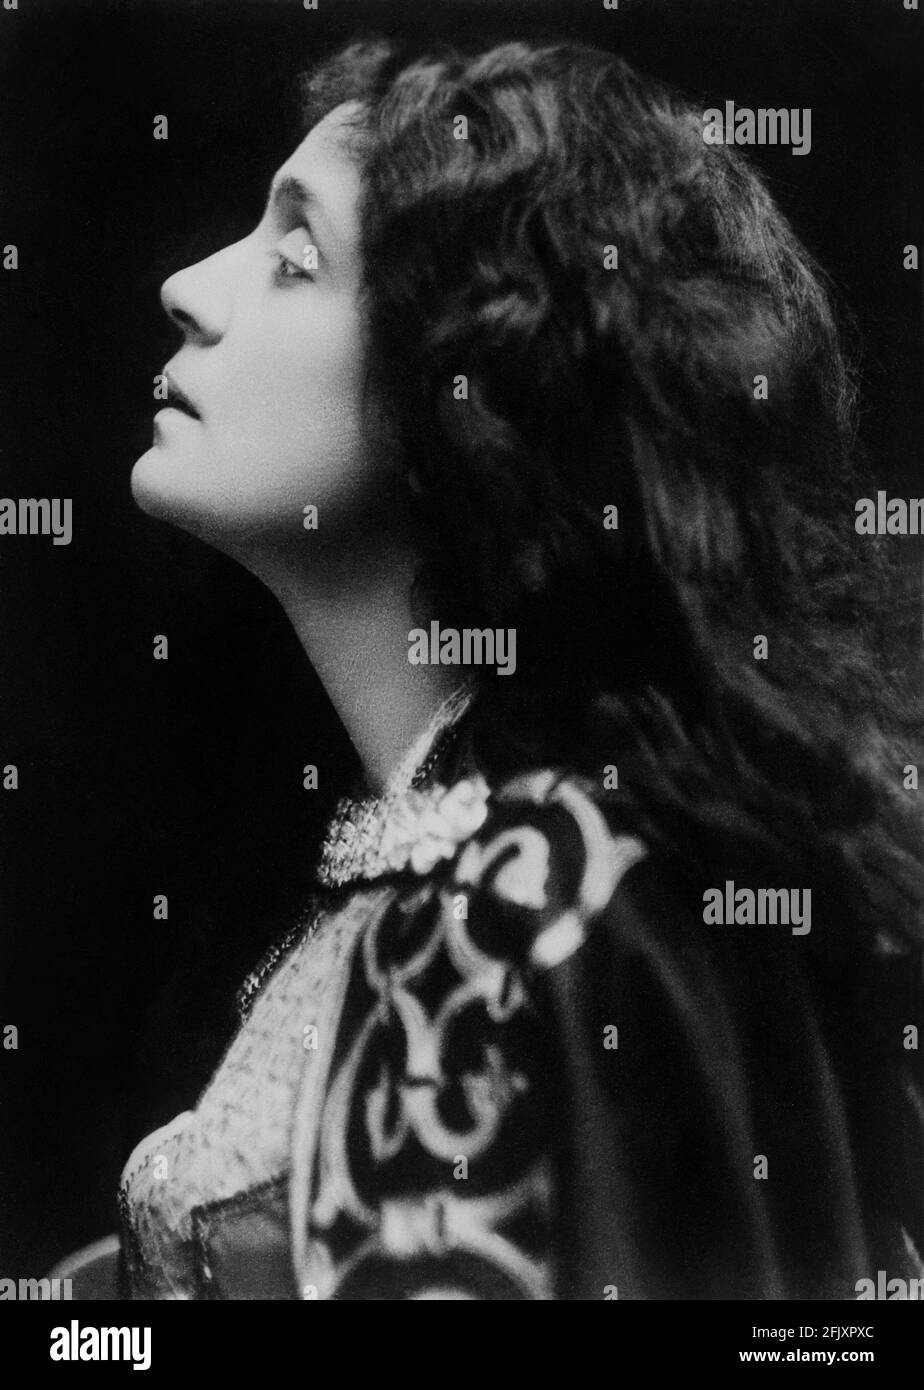 1880 ca., ITALIEN : die berühmteste italienische Schauspielerin ELEONORA DUSE ( 1858 - 1924 ) Als sie in DER STADT VON ihrer Geliebten, der DICHTERIN GABRIELE D'ANNUNZIO, jung war - THEATER - TEATRO - DANNUNZIO - D' ANNUNZIO - divina - attrice teatrale - profilo - Profil - capelli lunghi - lange Haare - Kollo - Hals ---- Archivio GBB Stockfoto